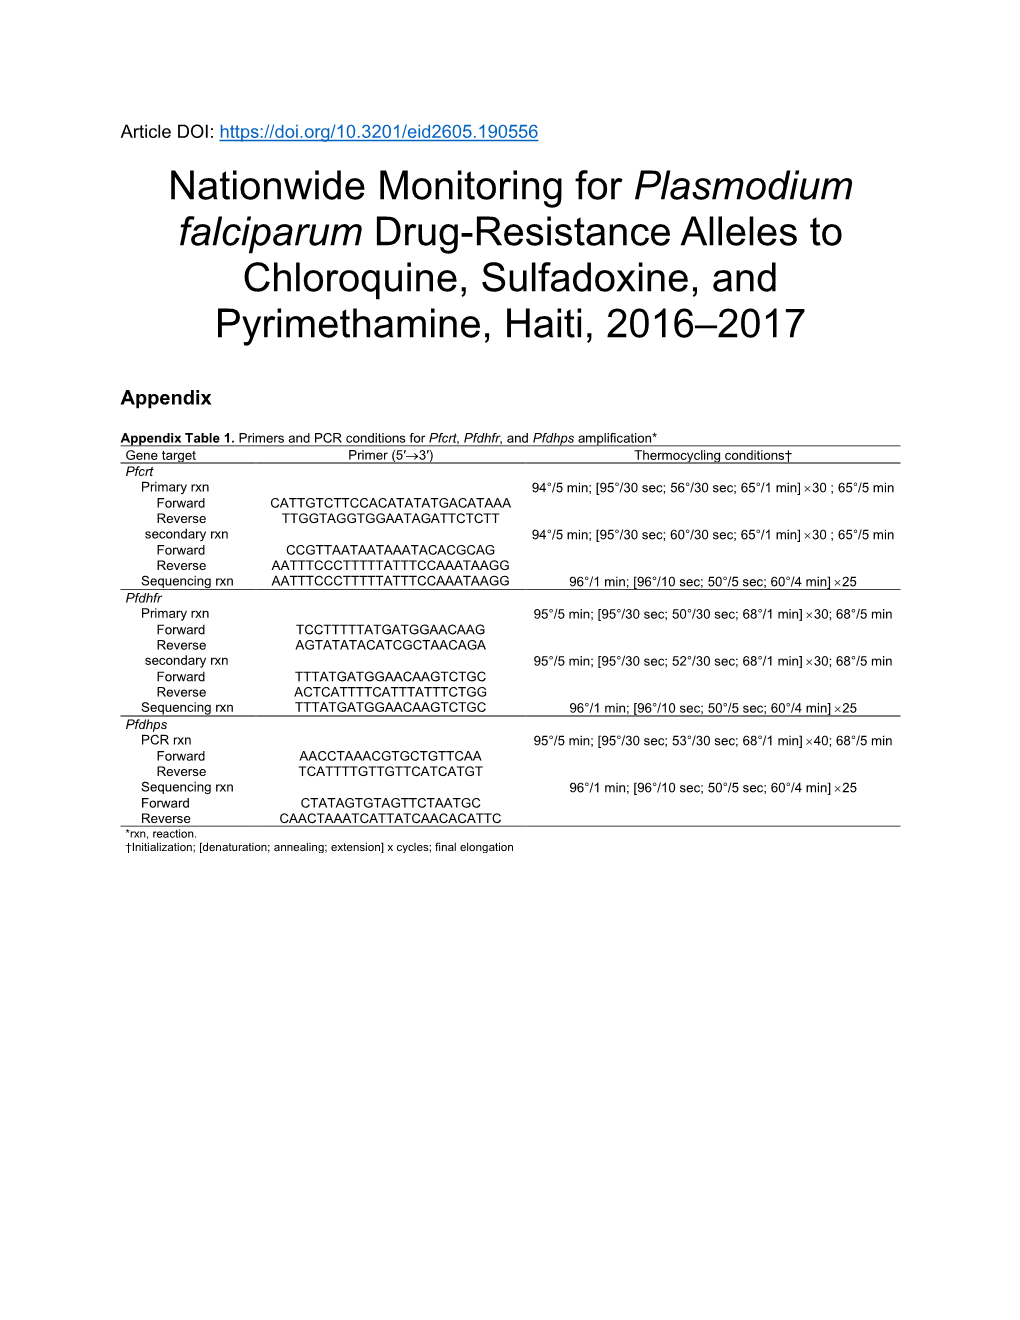 Nationwide Monitoring for Plasmodium Falciparum Drug-Resistance Alleles to Chloroquine, Sulfadoxine, and Pyrimethamine, Haiti, 2016–2017